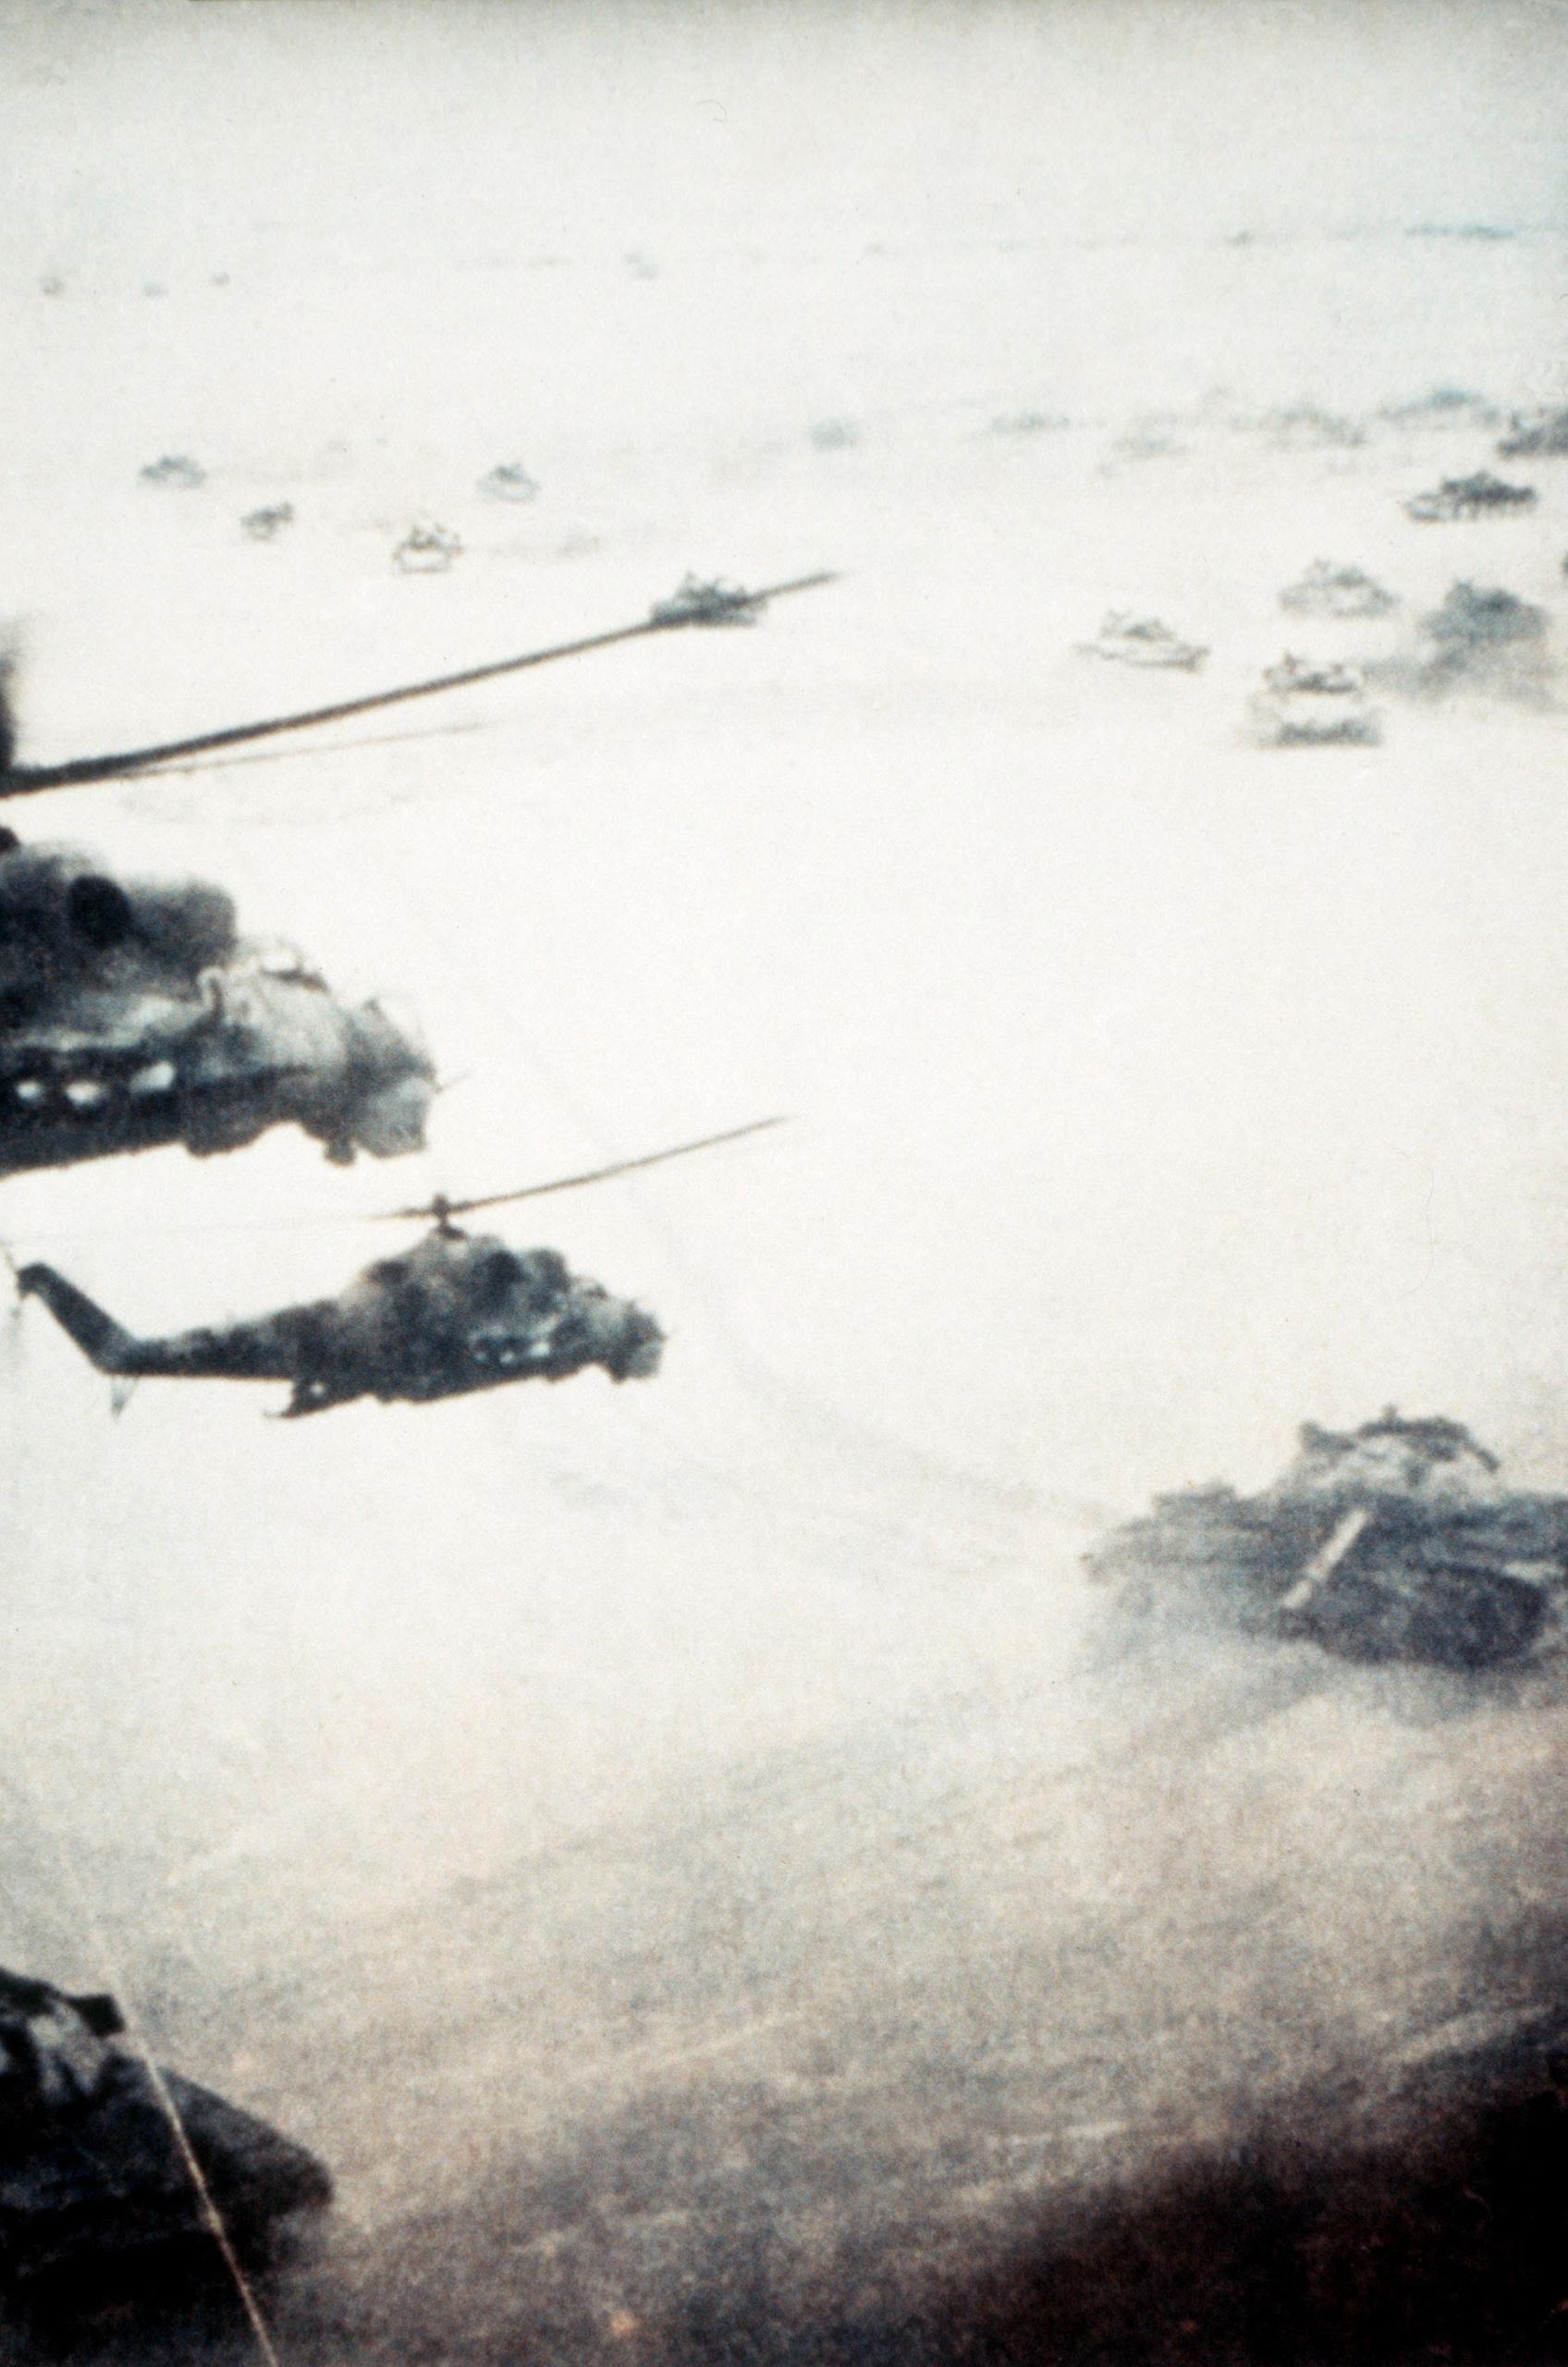 SovietafghanwarTanksHelicopters-scaled.jpg